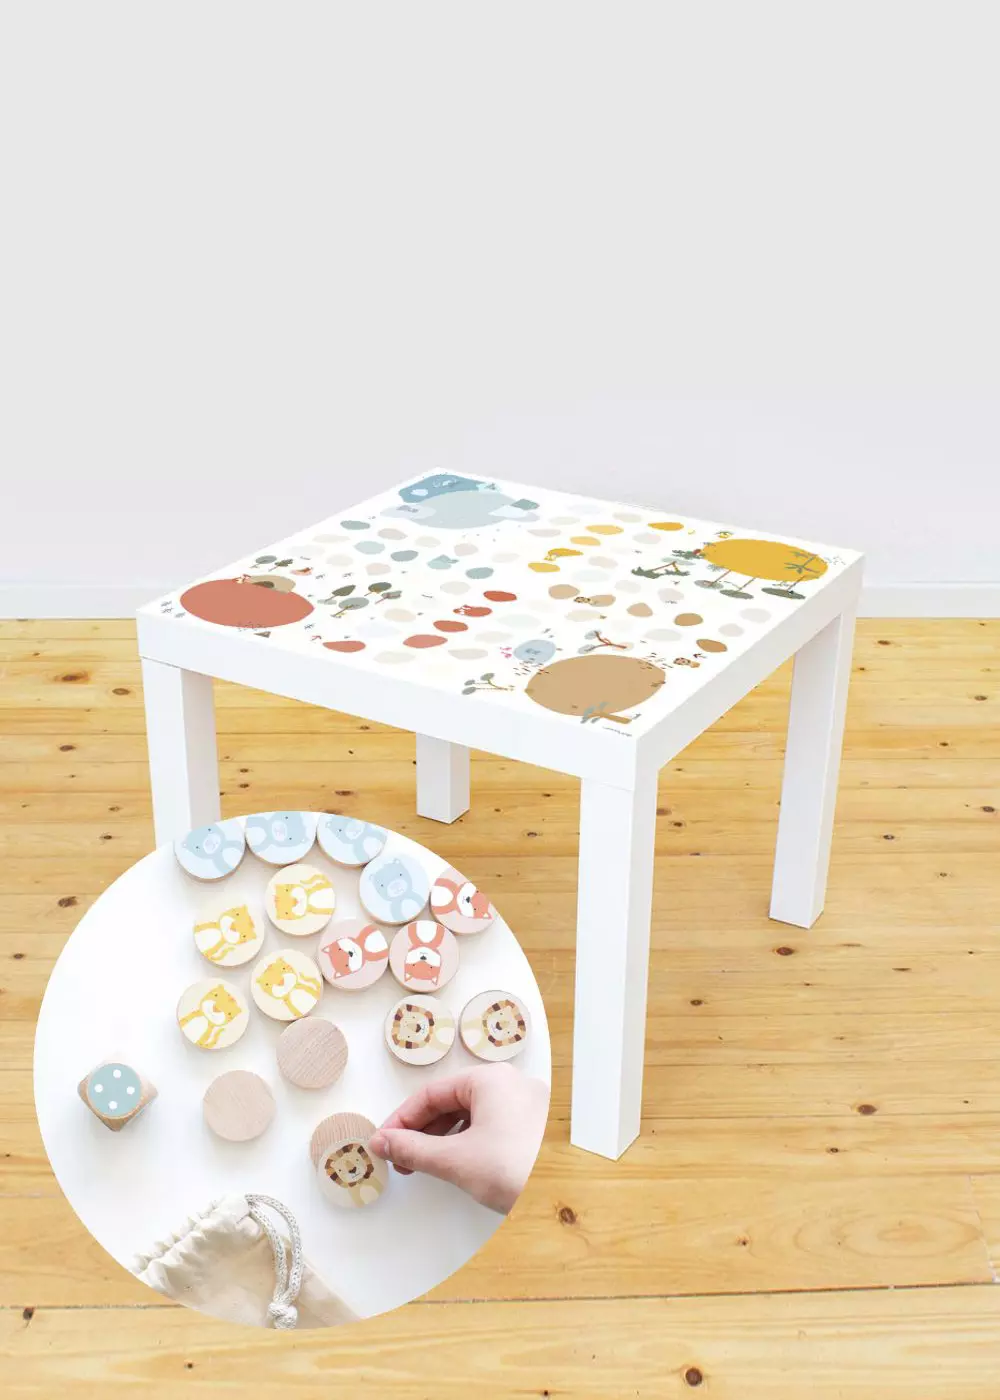  Film adhésif pour table Ikea jeu de dés animaux colorés table enfant IKEA LACK